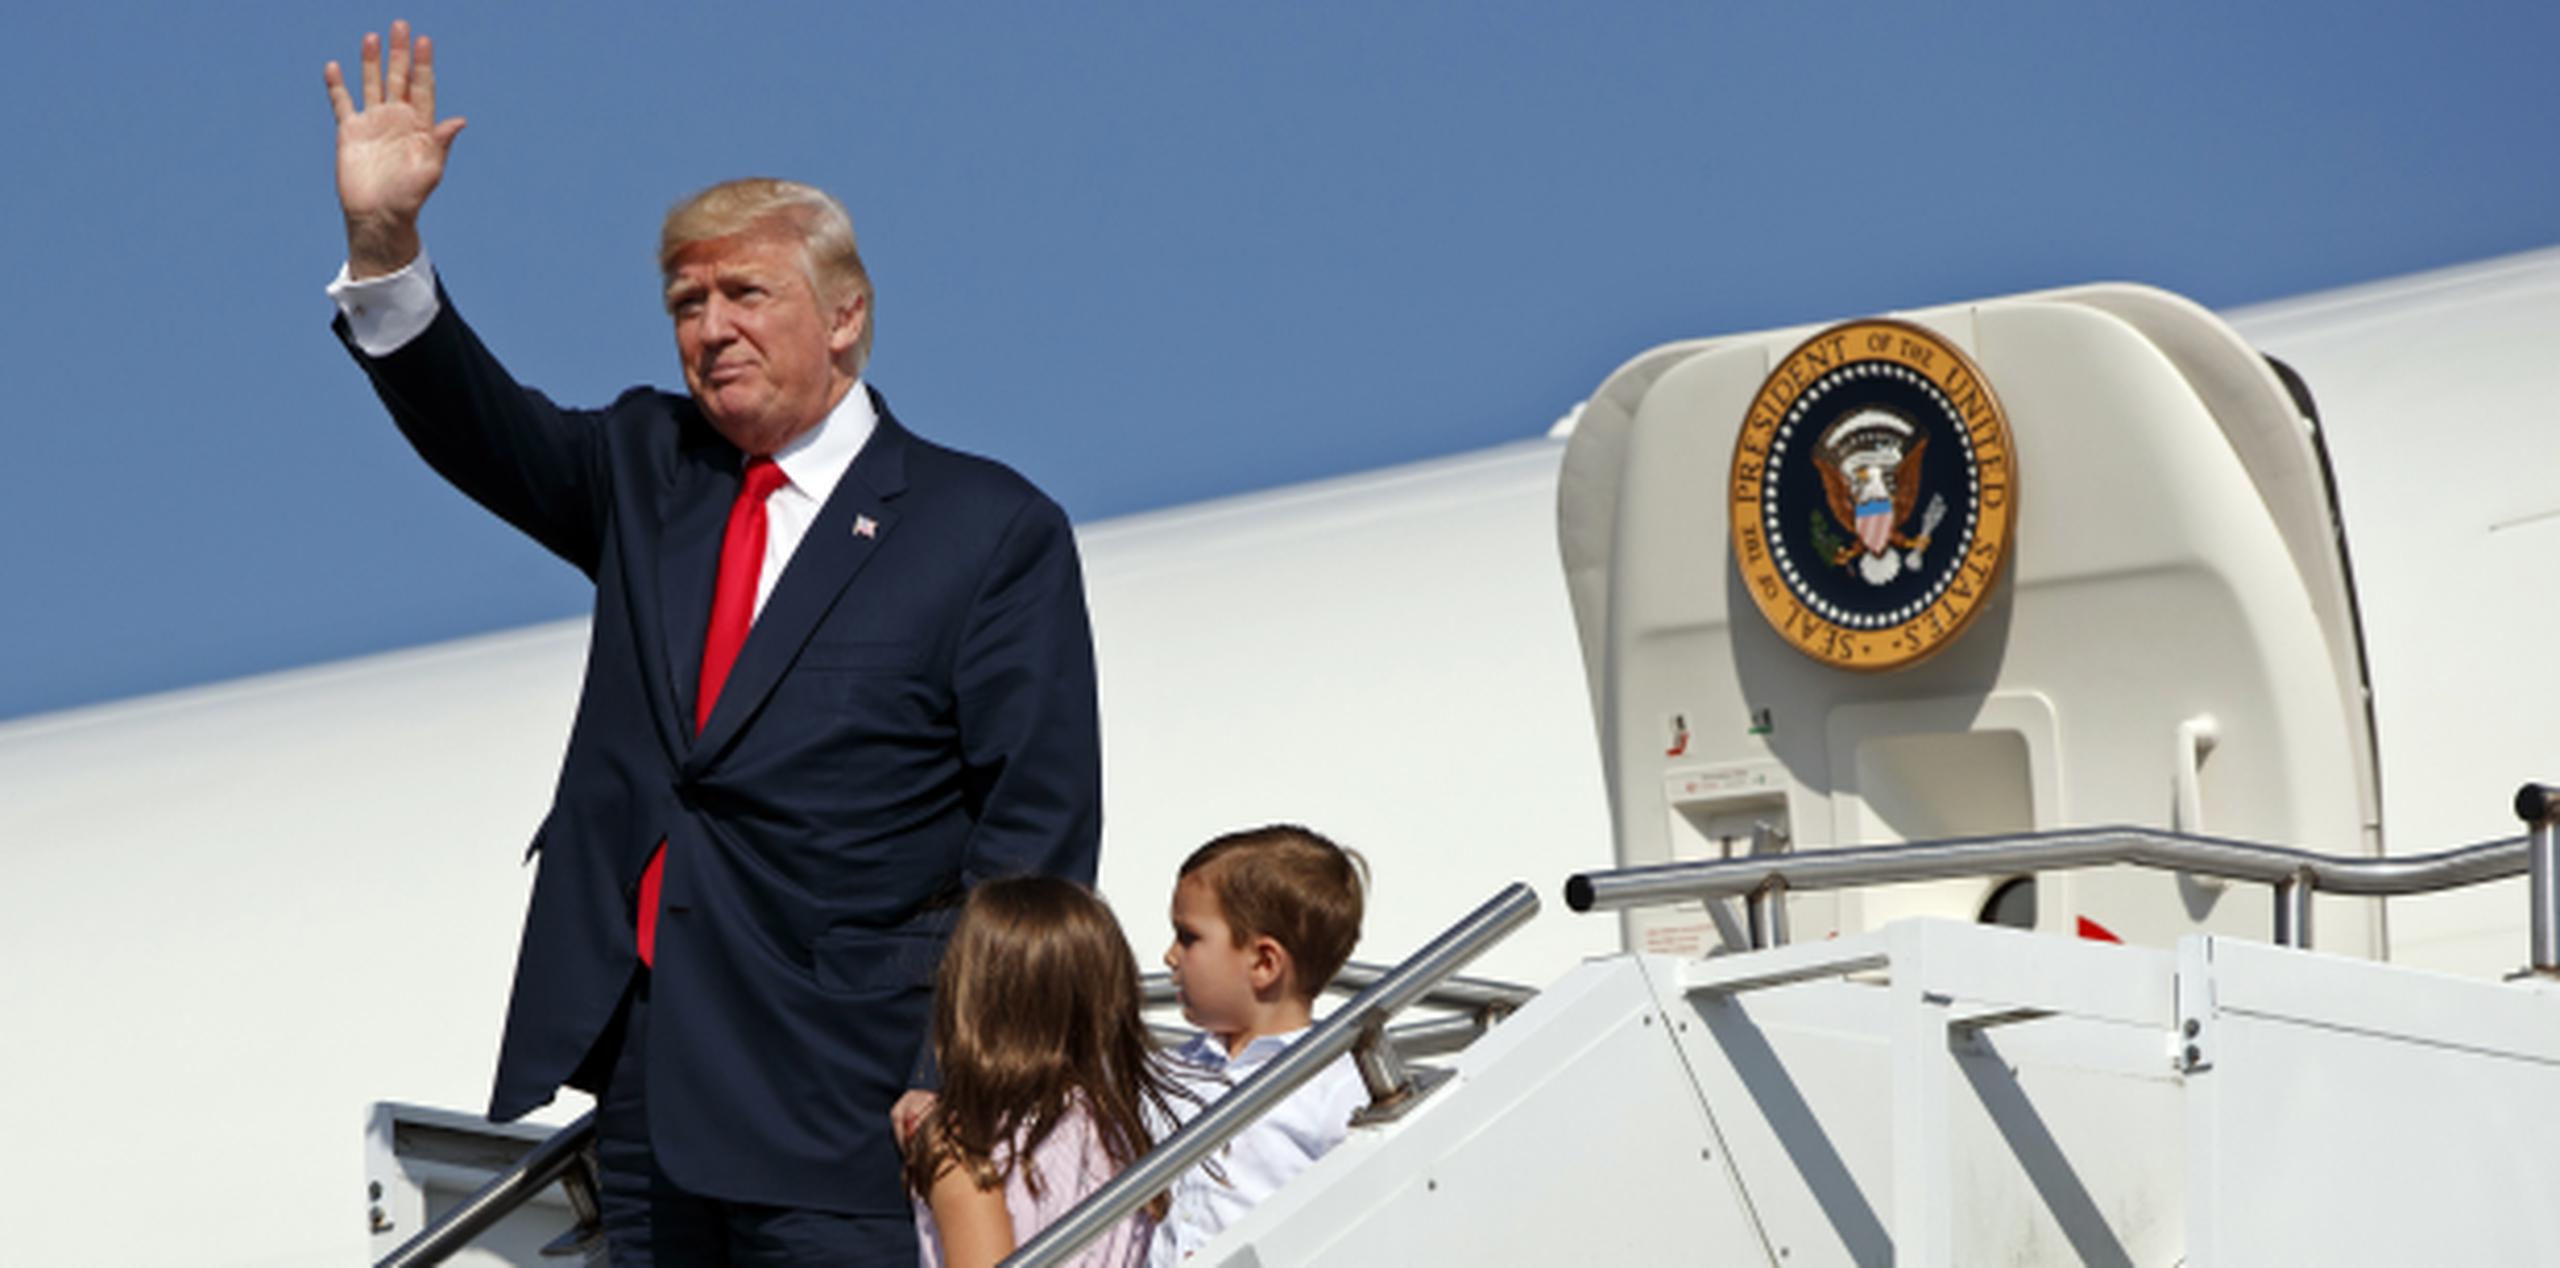 Donald Trump en su llegada ayer al Aeropuerto Municipal Morristown en Nueva Jersey, con sus nietos Arabella y Joseph Kushner. (AP / Evan Vucci)